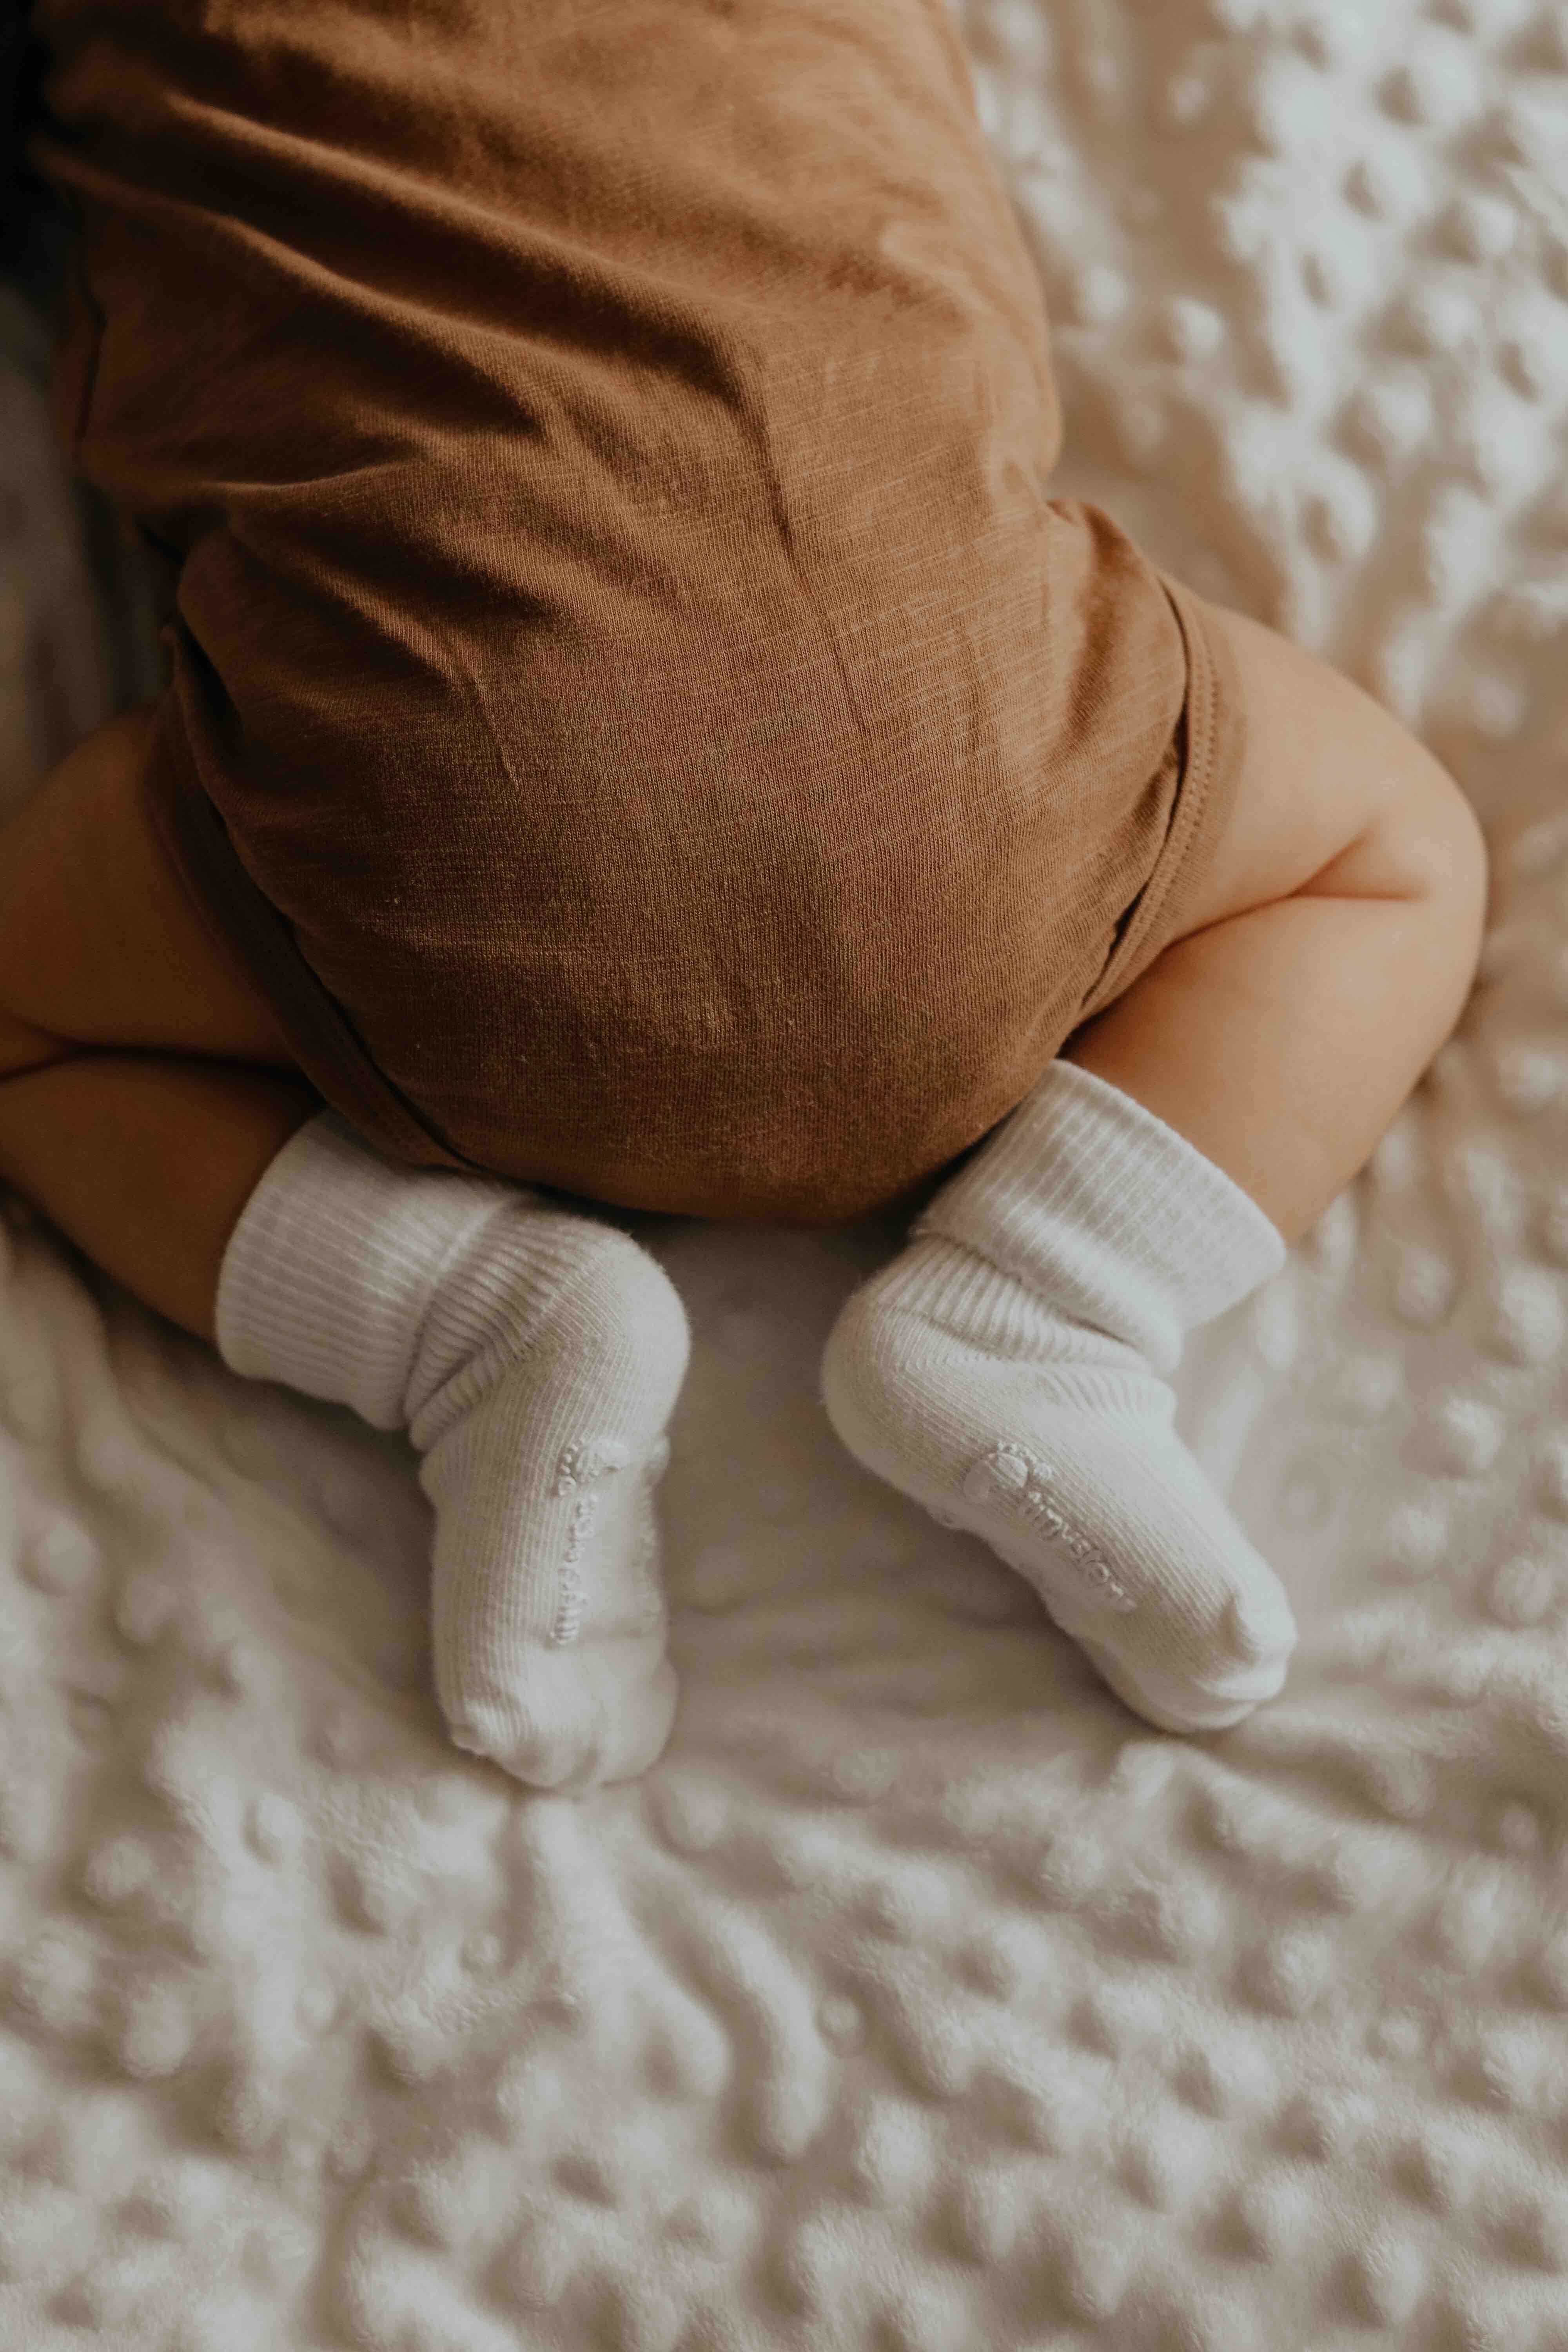 Maternité] La liste de naissance minimaliste